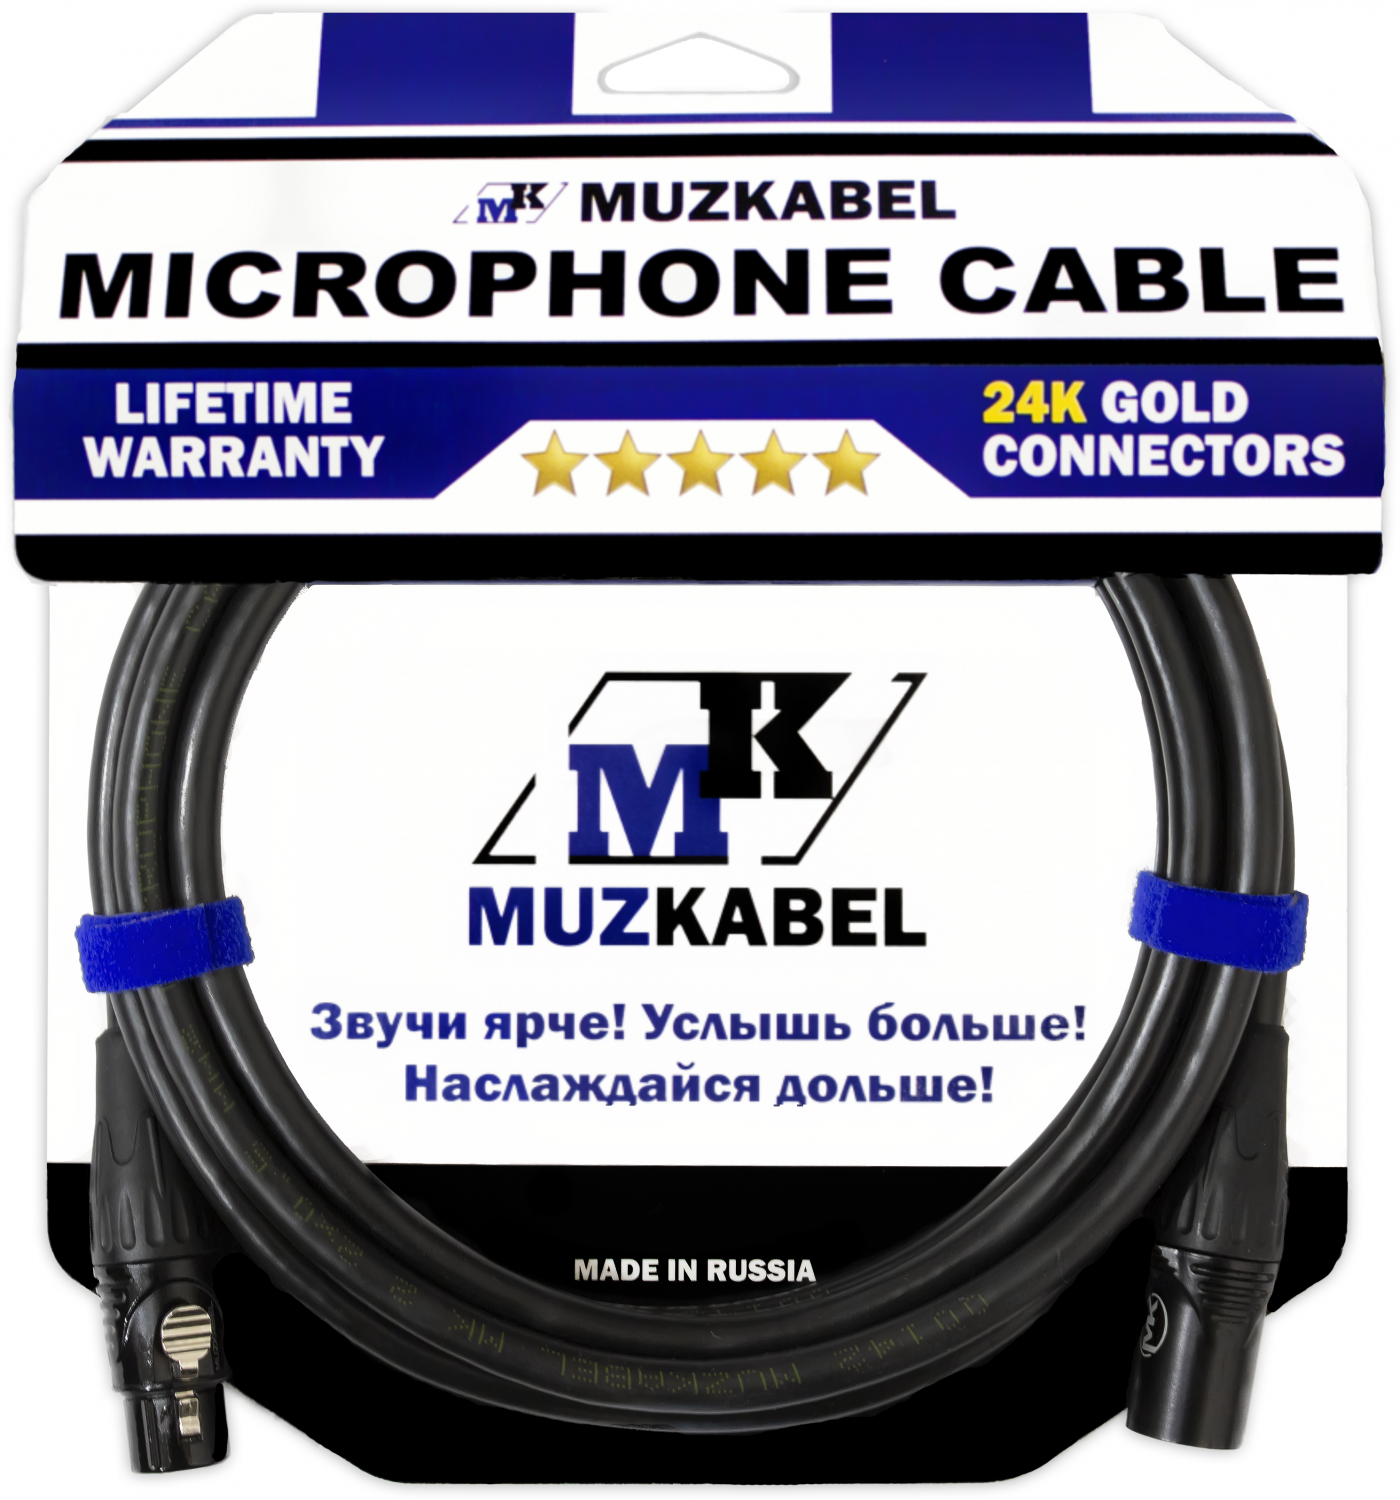 Микрофонный кабель MUZKABEL MBXMK2 - 5 метров, XLR - XLR